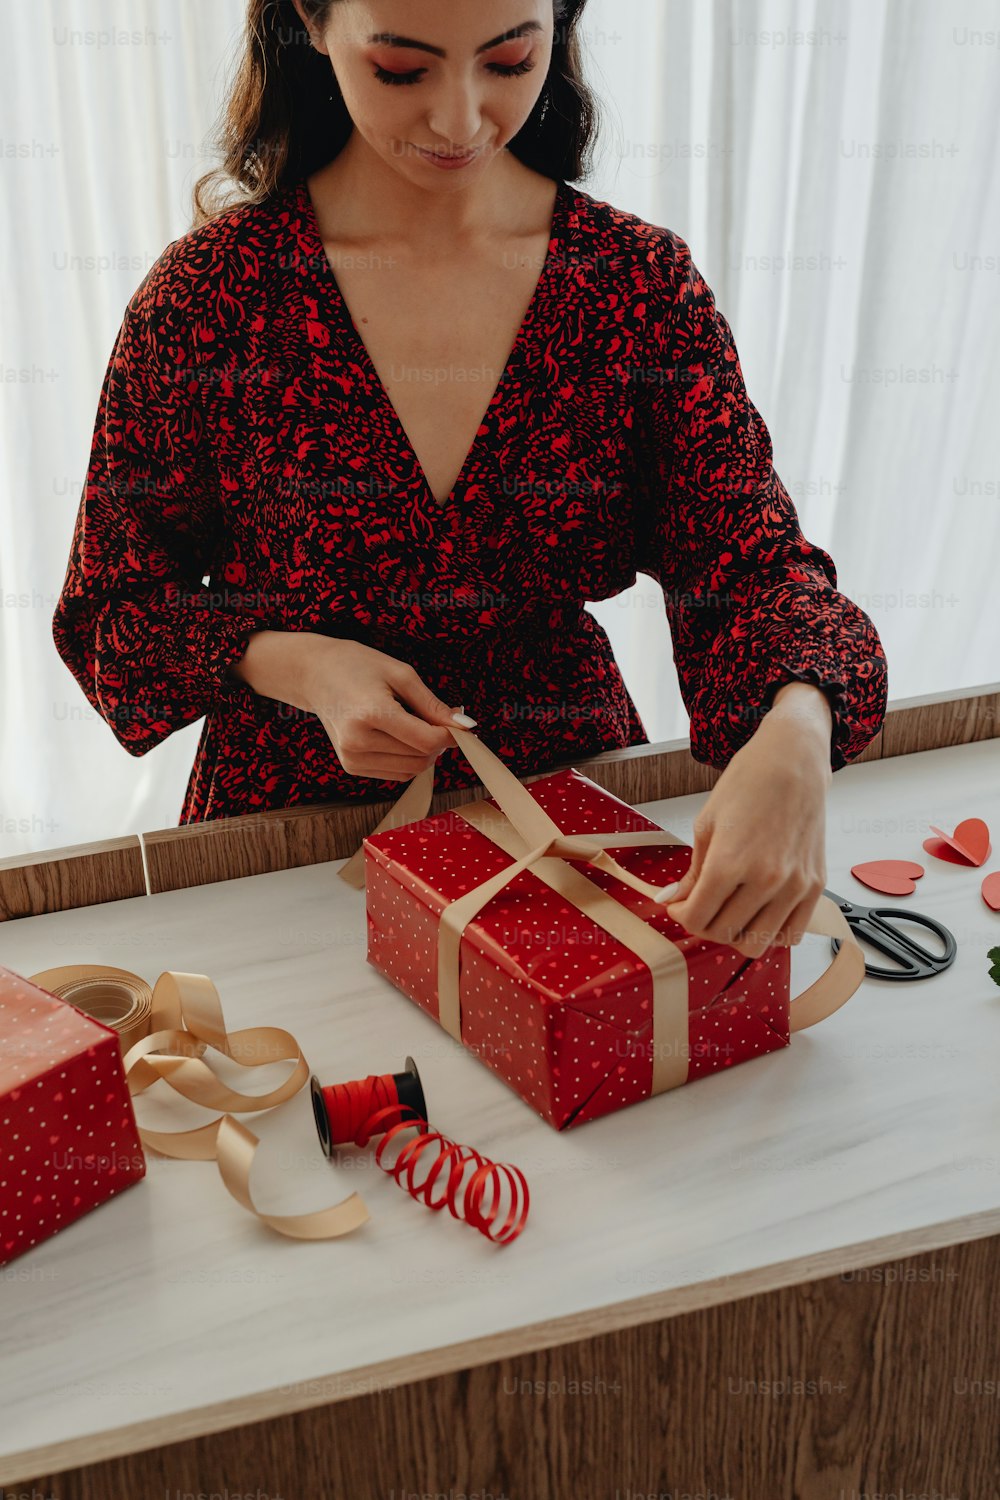 빨간 드레스를 입은 여자가 ��선물 상자를 열고 있다